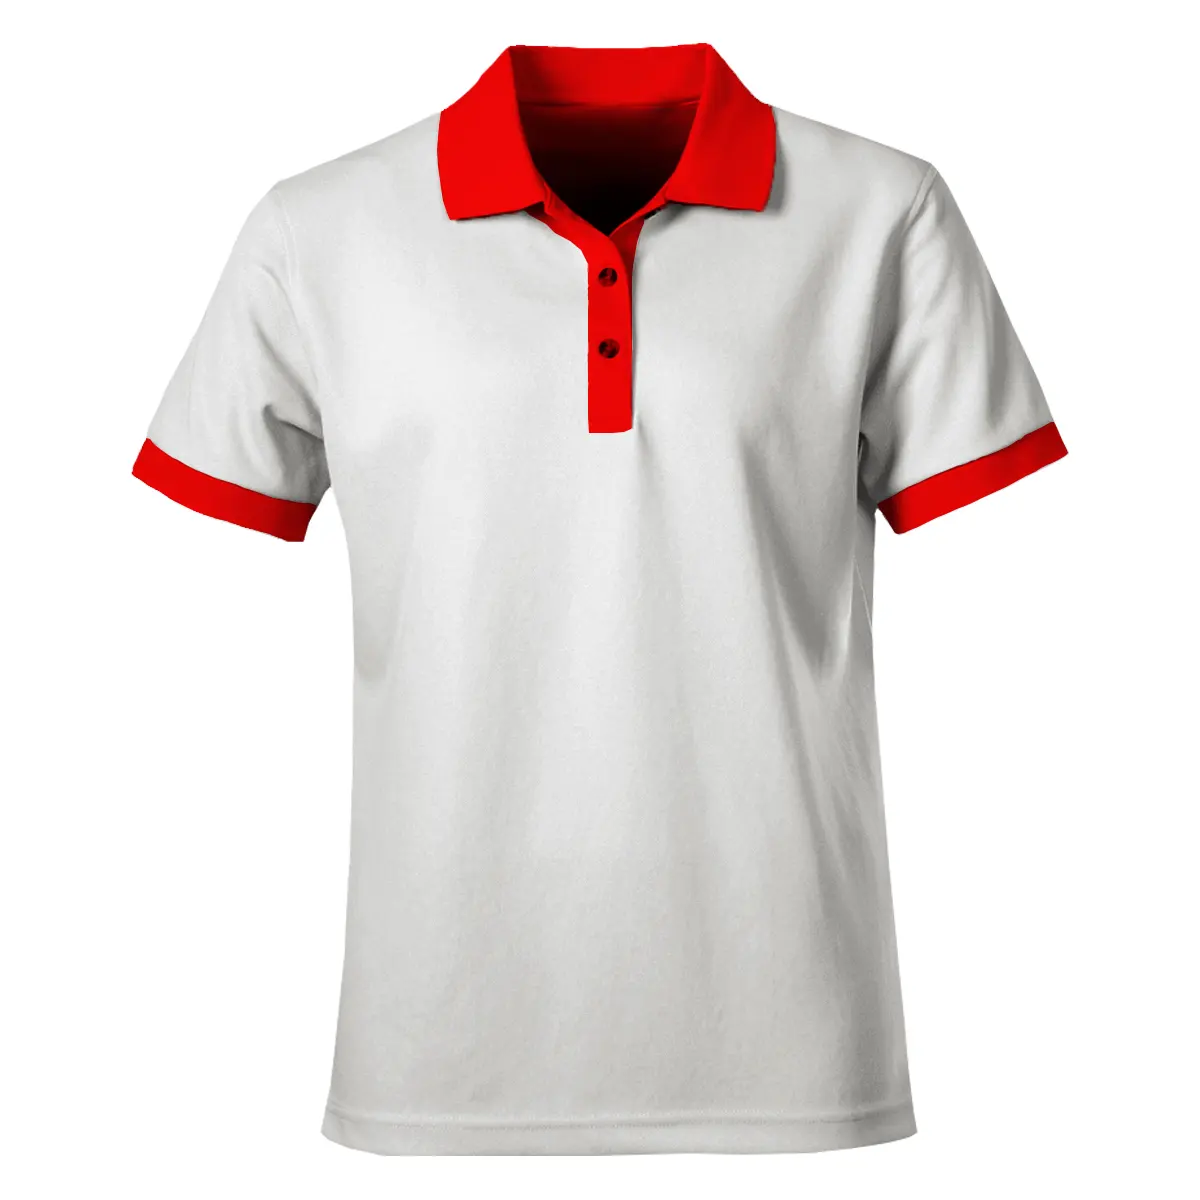 남성 폴로 짧은 소매 격자 무늬 폴로 저지 클래식 피트 피케 골프 셔츠 슬림 피트 기본 디자인 코튼 셔츠